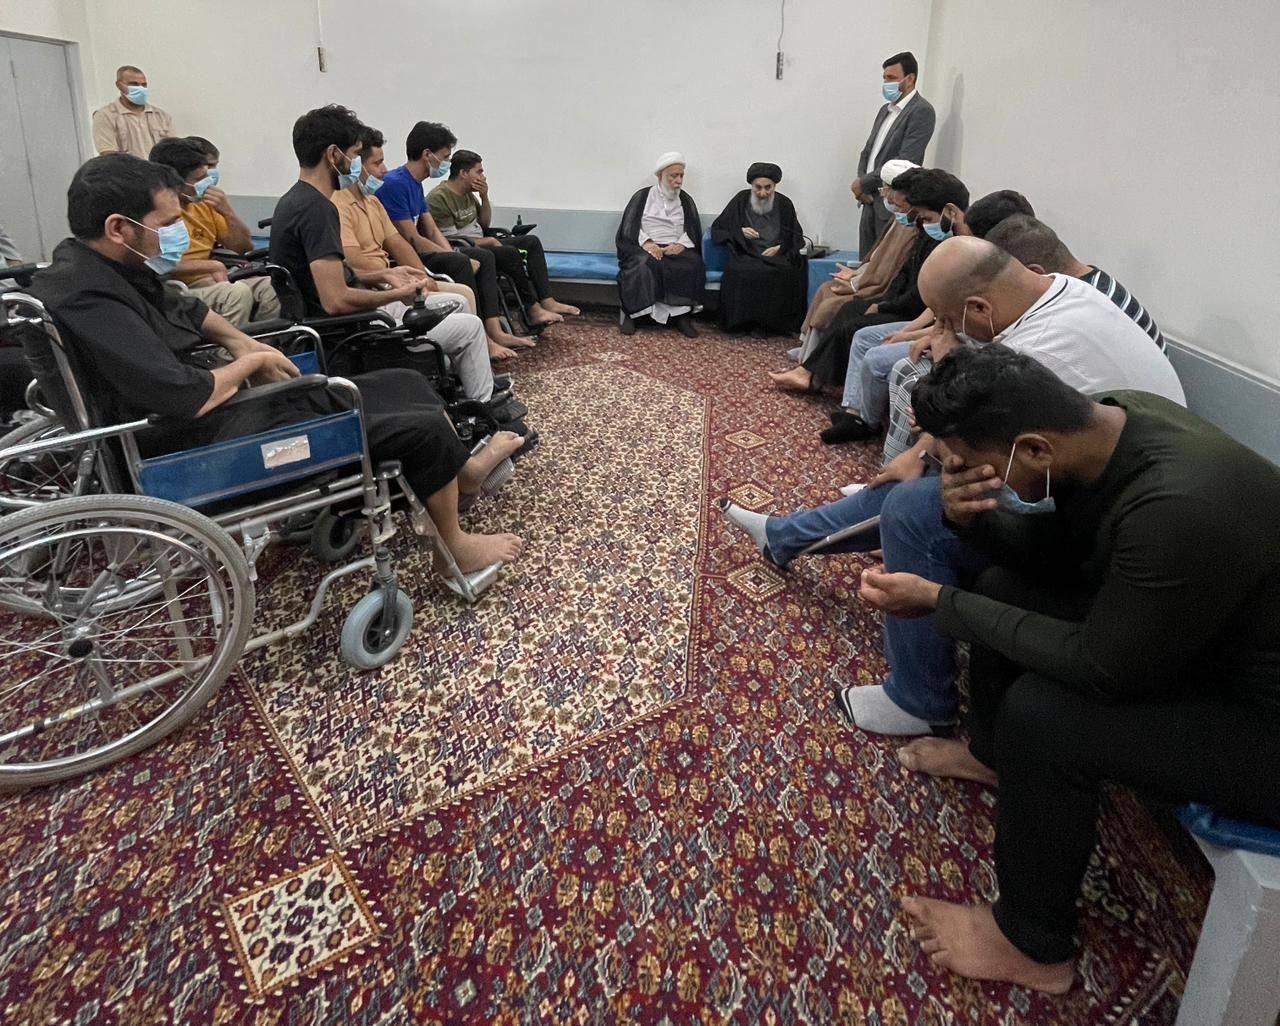 السيد السيستاني يستقبل جمعًا من المقاتلين المصابين ويشيد بتضحياتهم (صورة)